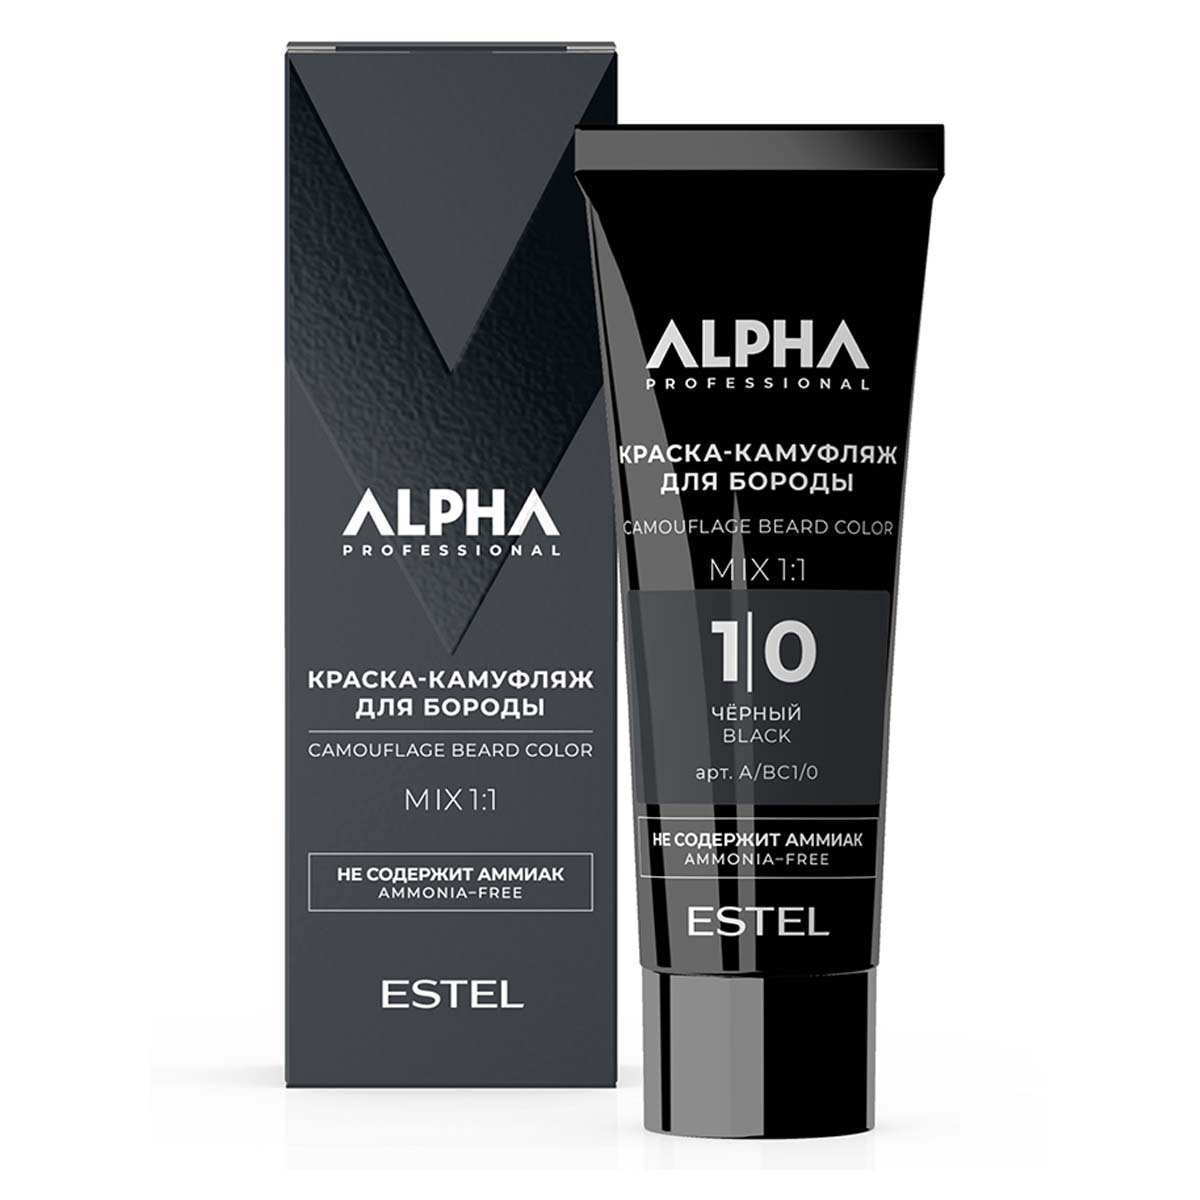 Крем-камуфляж ALPHA HOMME для окрашивания бороды ESTEL PROFESSIONAL 1/0 черный 40 мл масло для волос и бороды alpha homme